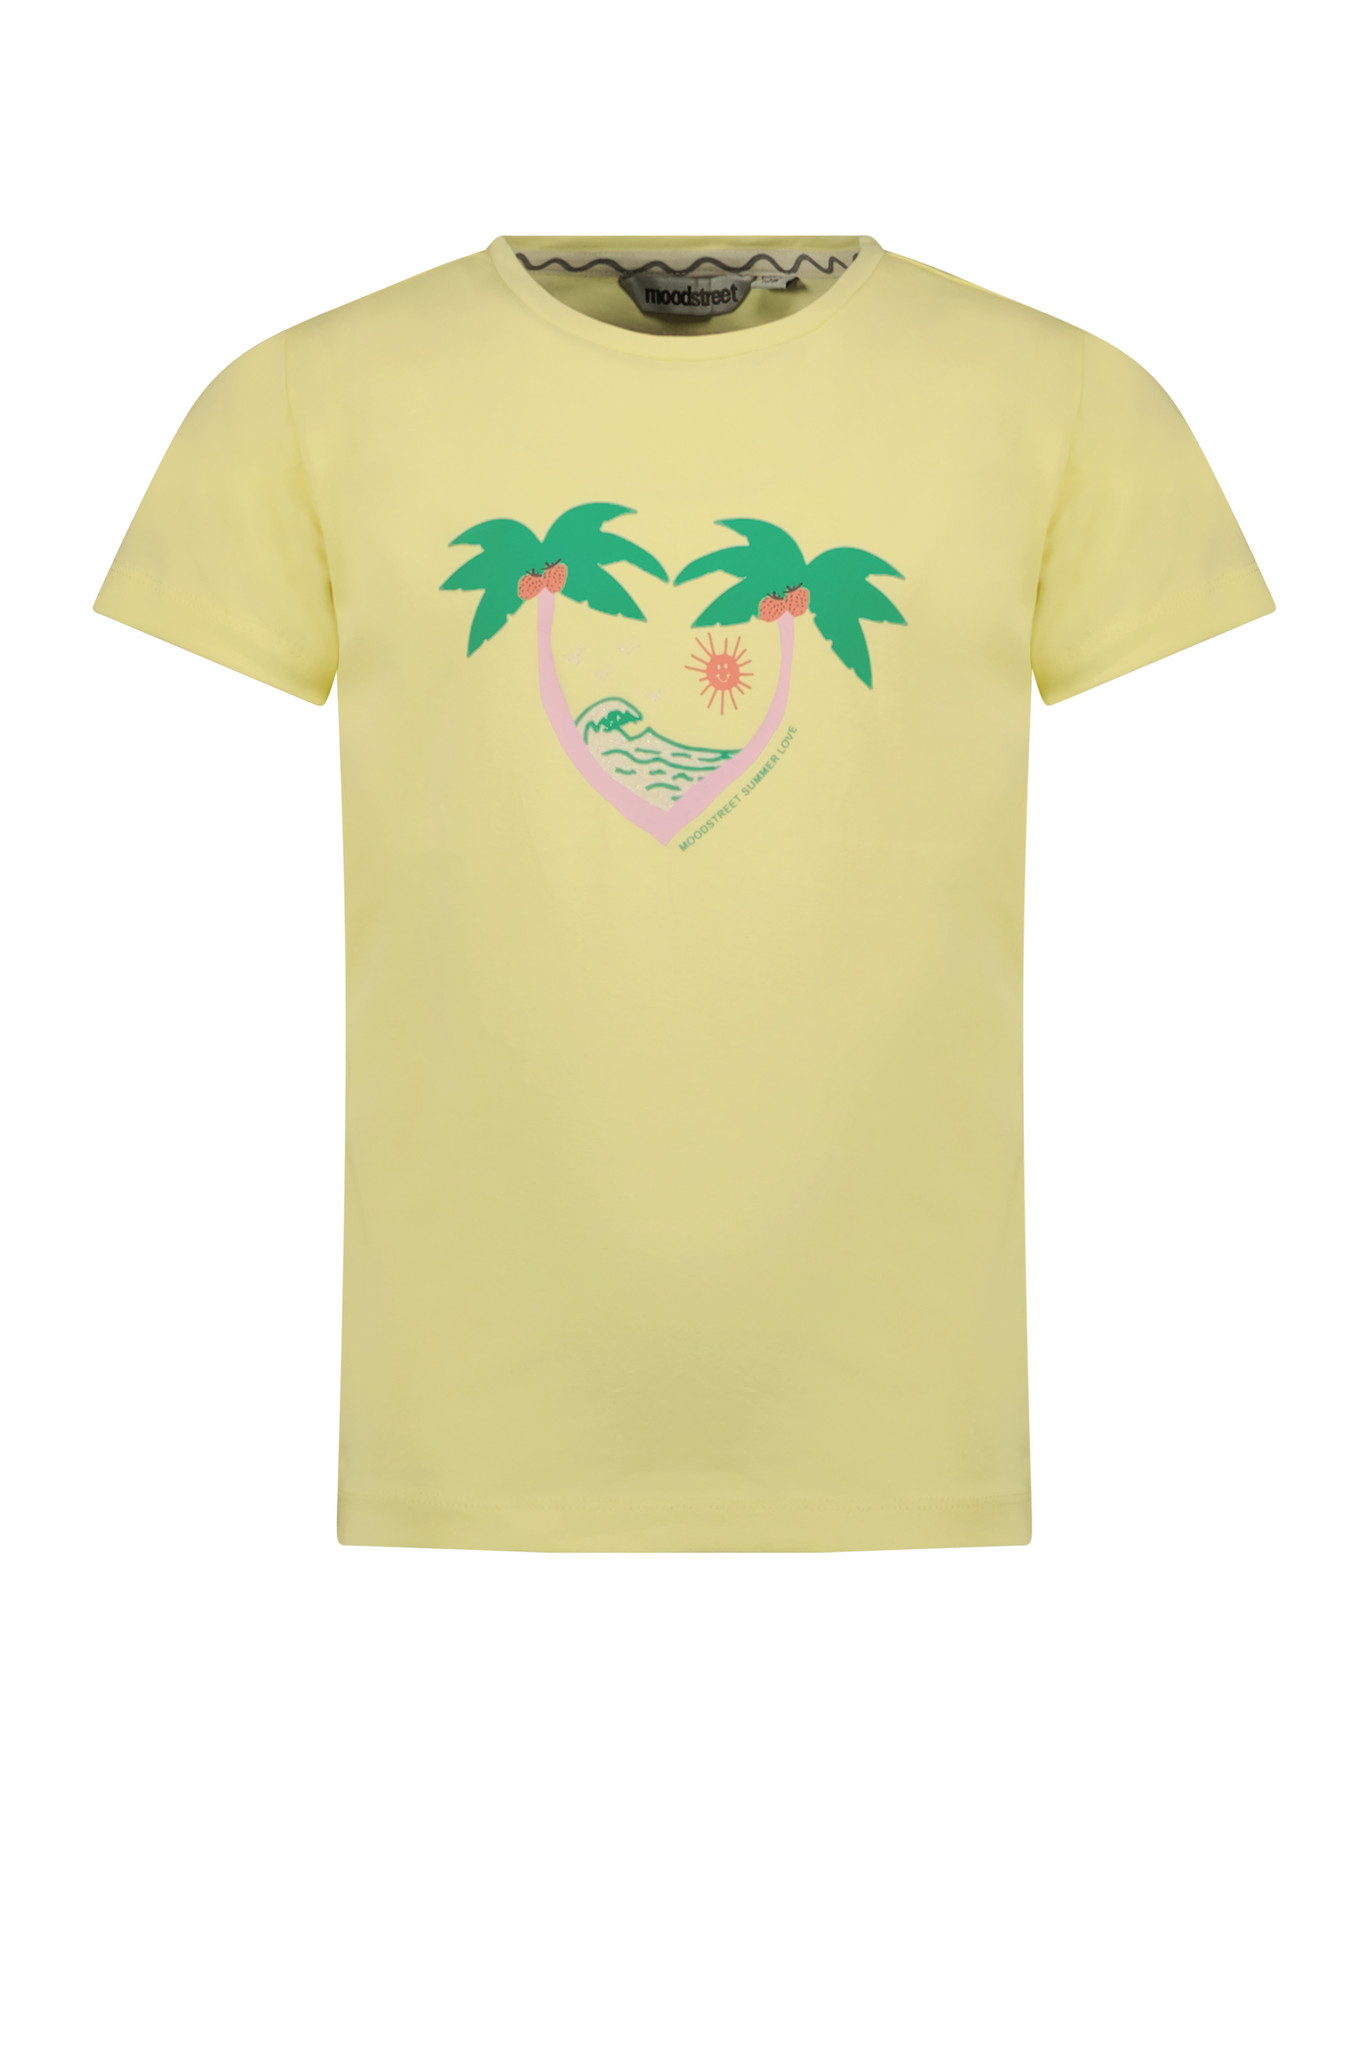 Moodstreet Meisjes t-shirt print - Sweet lemon geel